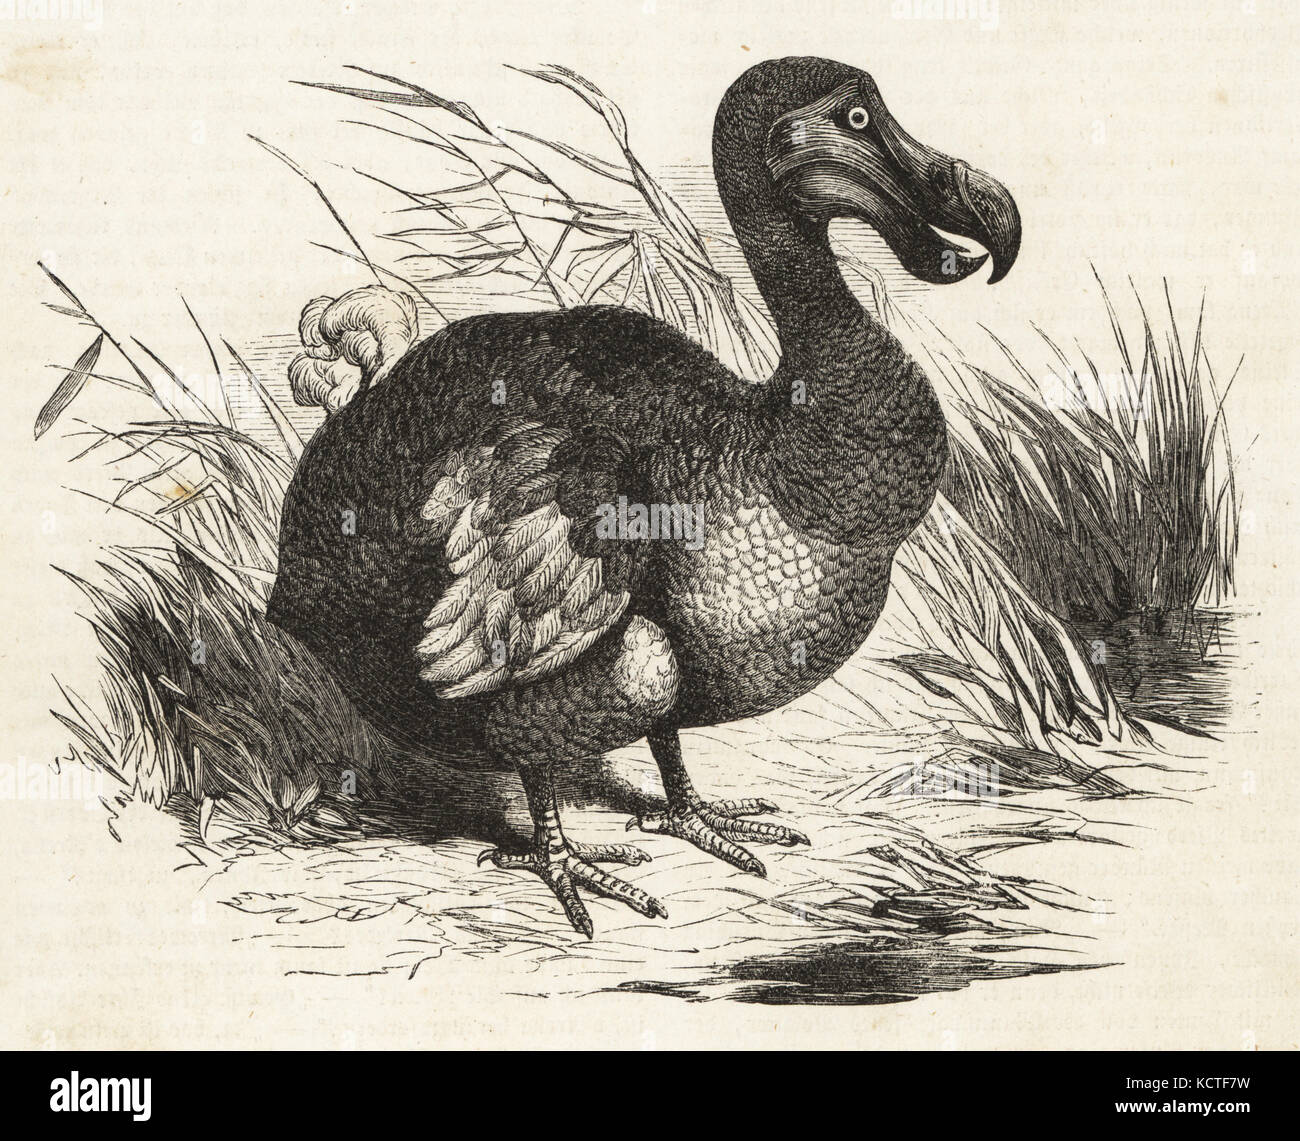 Oiseau disparu, le dodo, raphus cucullatus gravure sur bois. de die illustrirte Welt (Le Monde illustré), Stuttgart, Allemagne, 1857. Banque D'Images